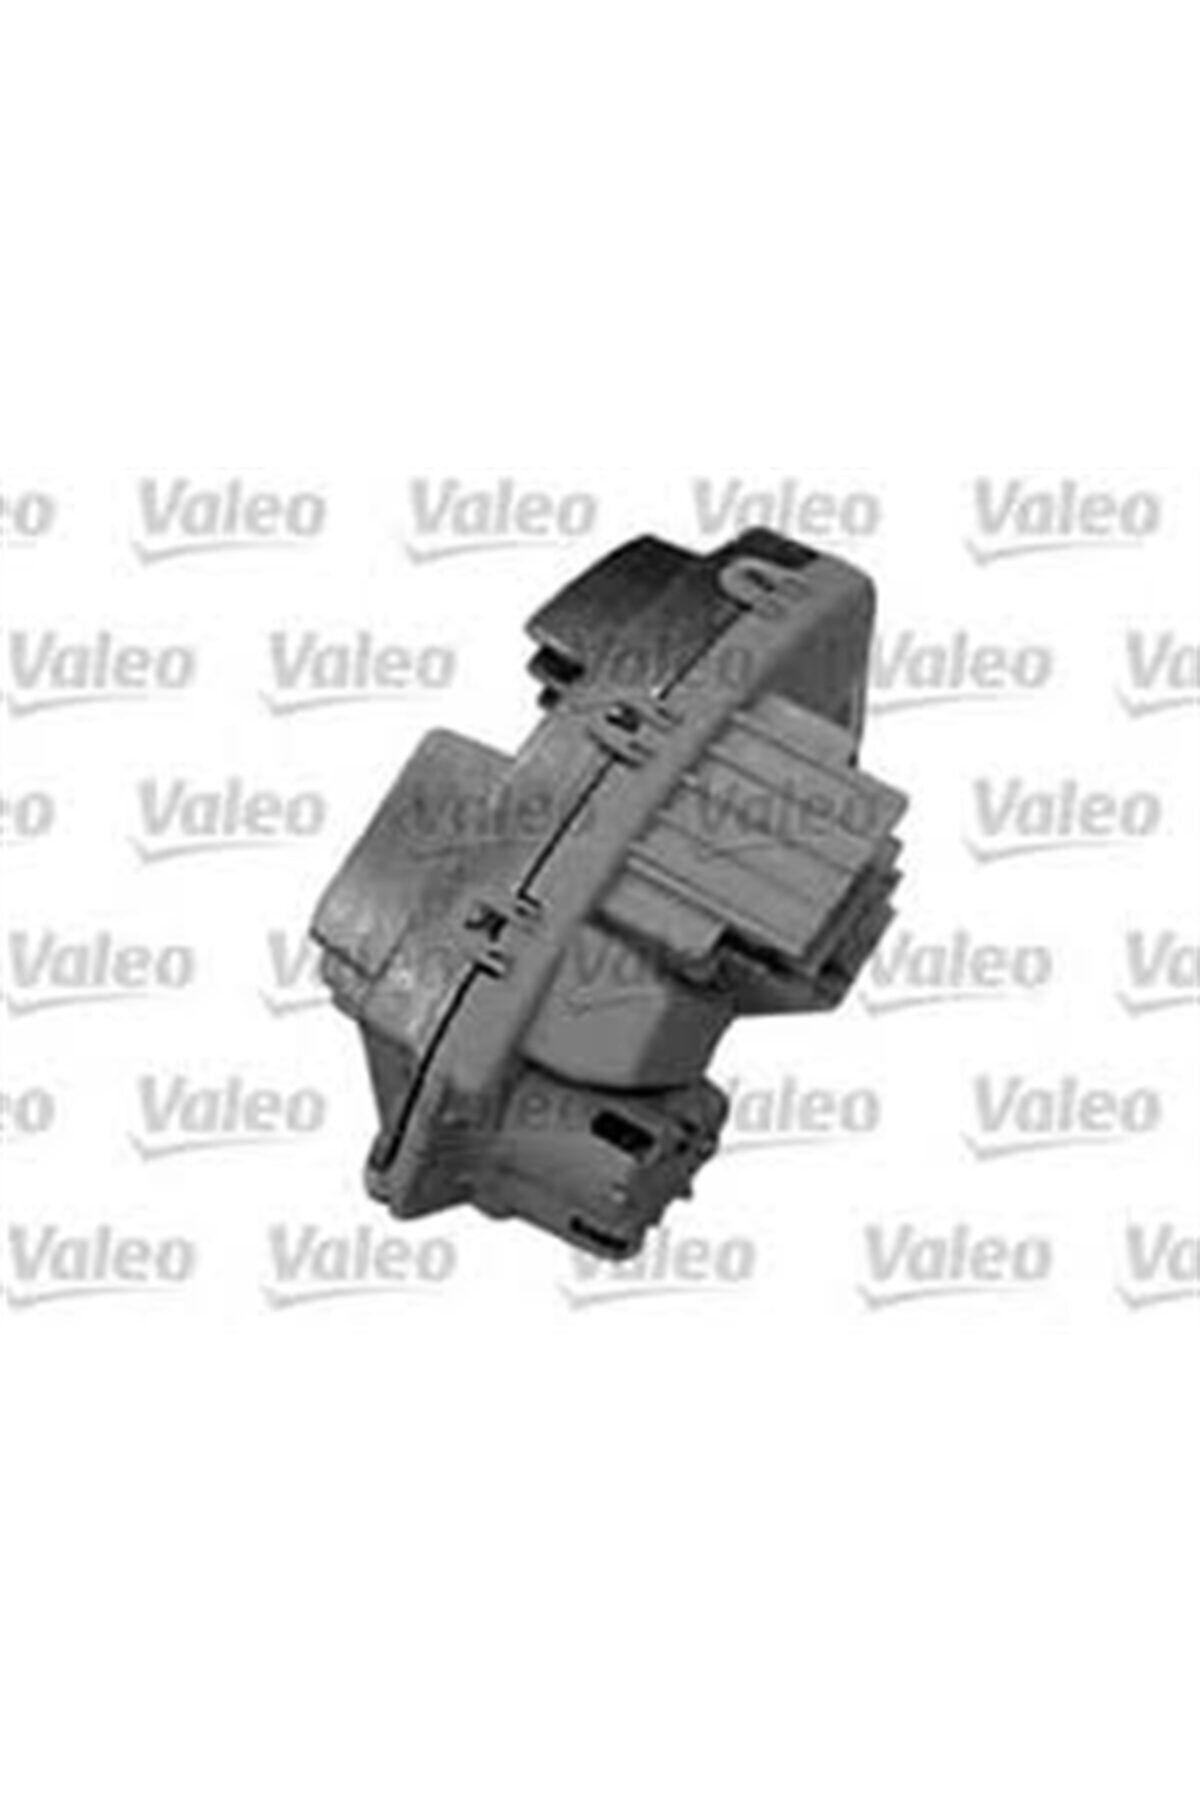 Valeo Bmw E90 Kasa 318i Klima Şalteri Kalorifer Kontrol Ünitesi